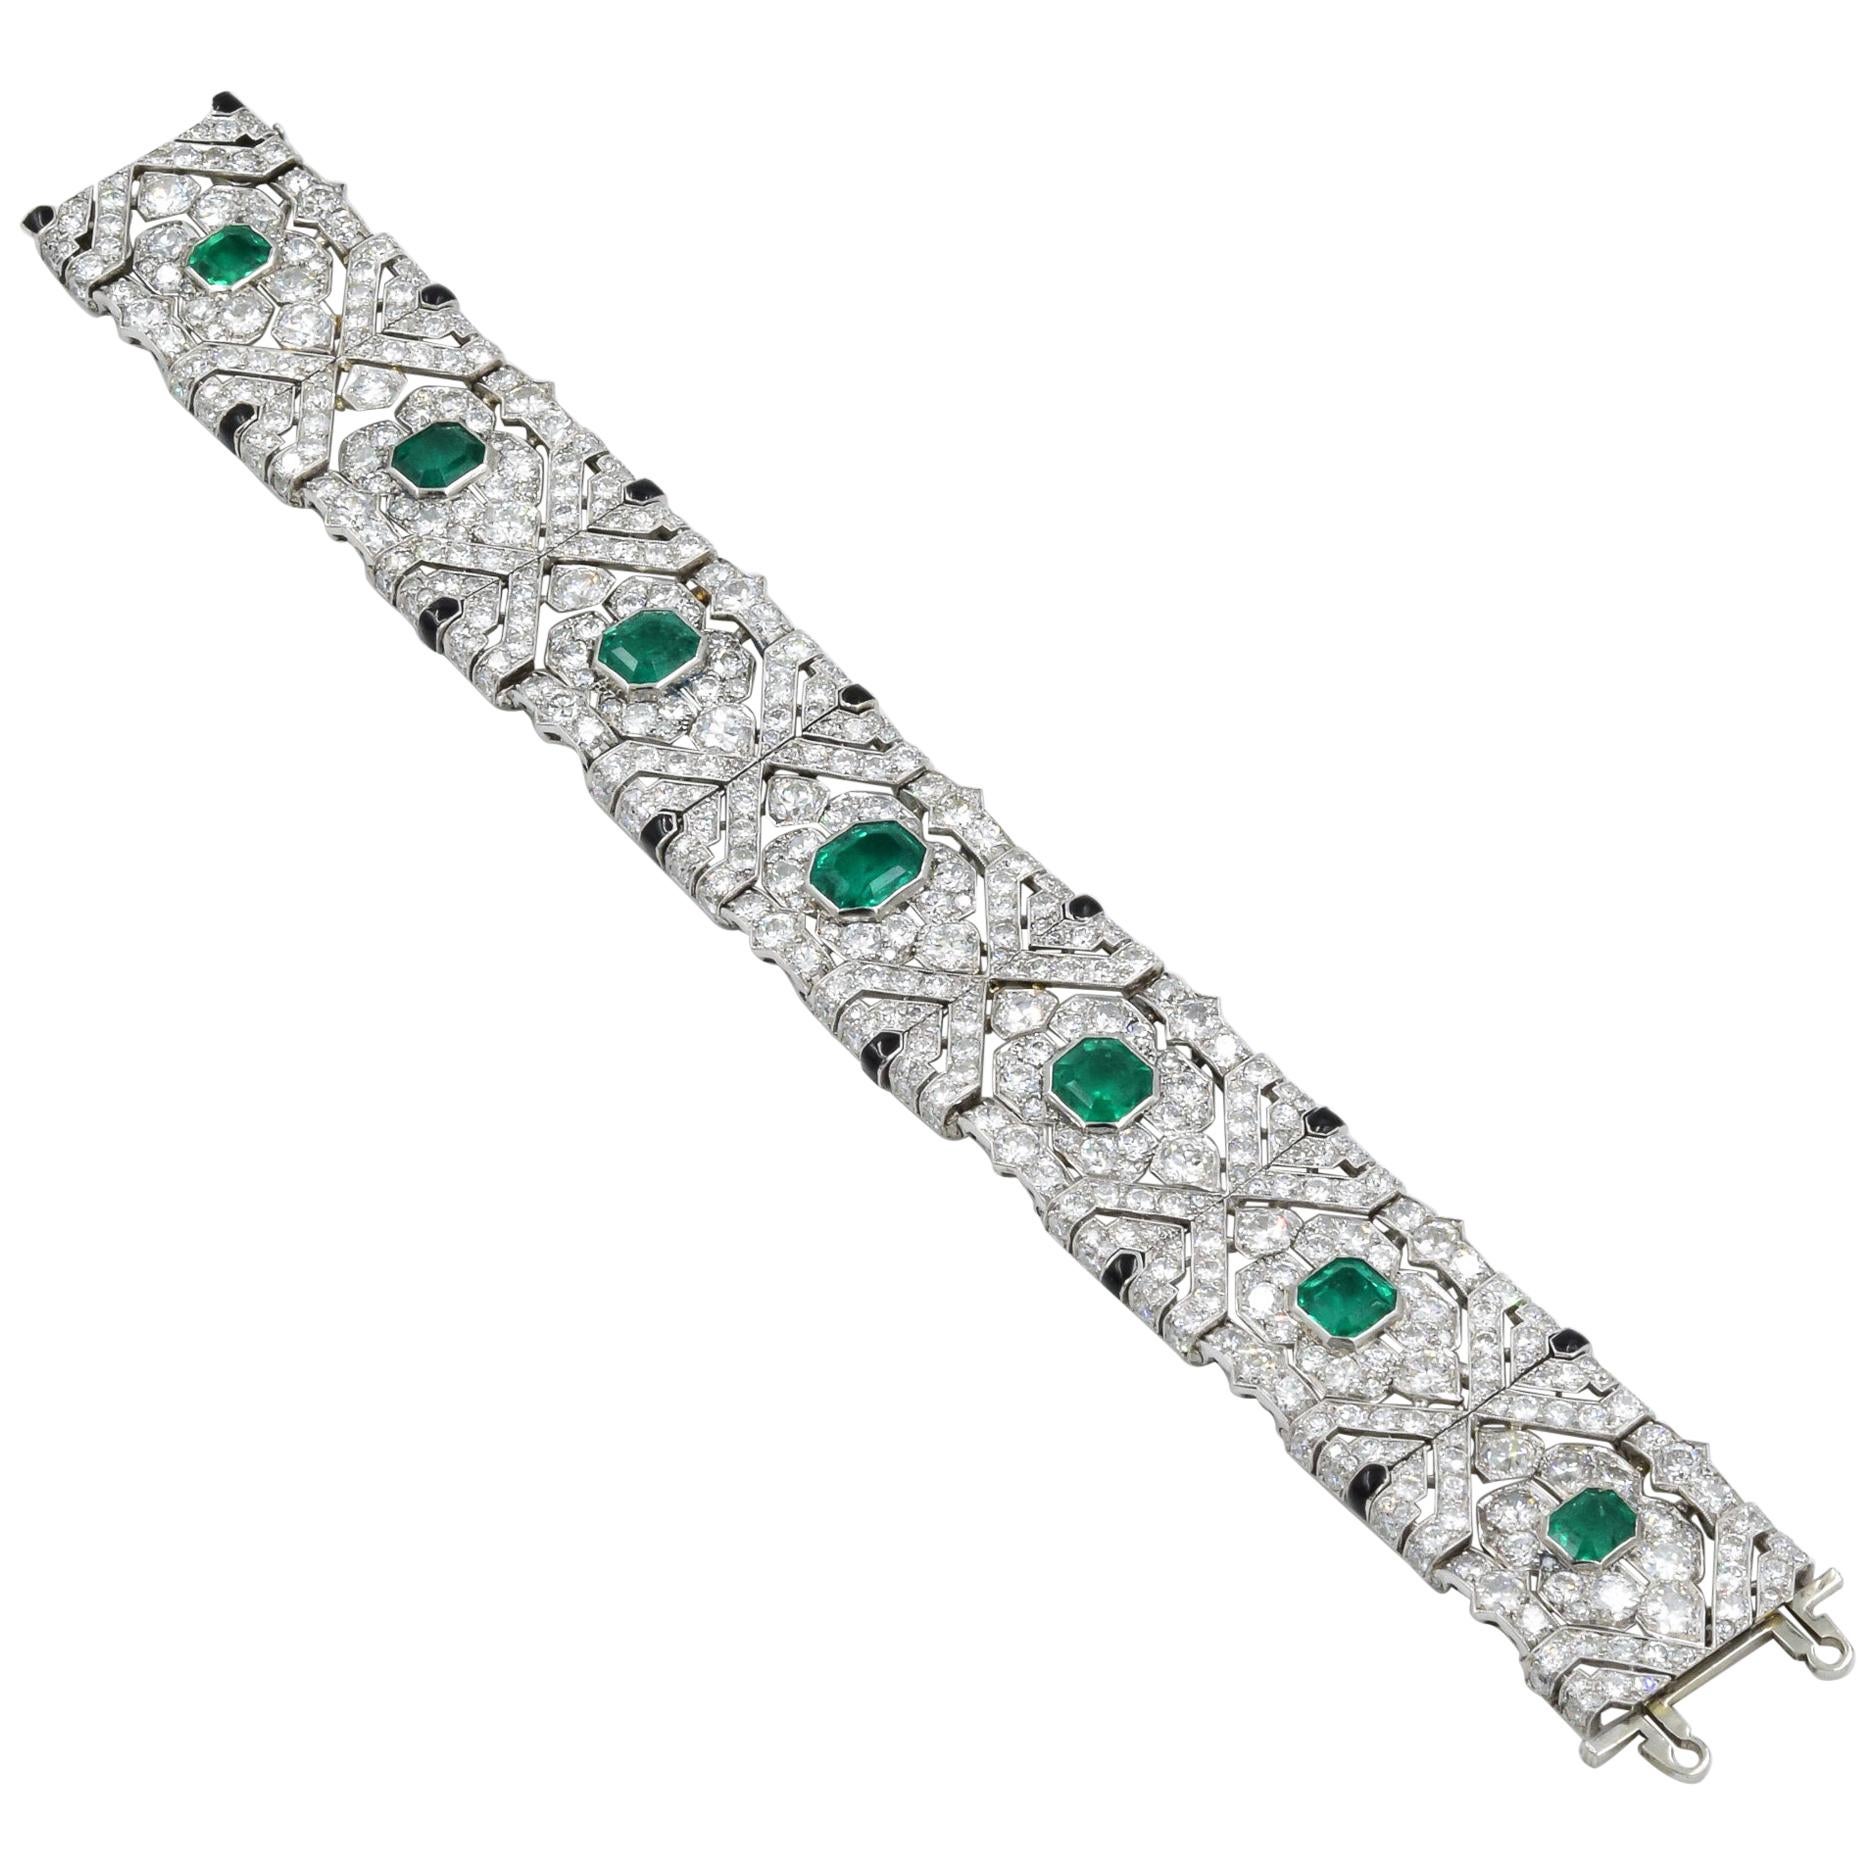 10 Carat Colombian Emerald Bracelet in Platinum AGL Certified 20 Carat 1920s Era